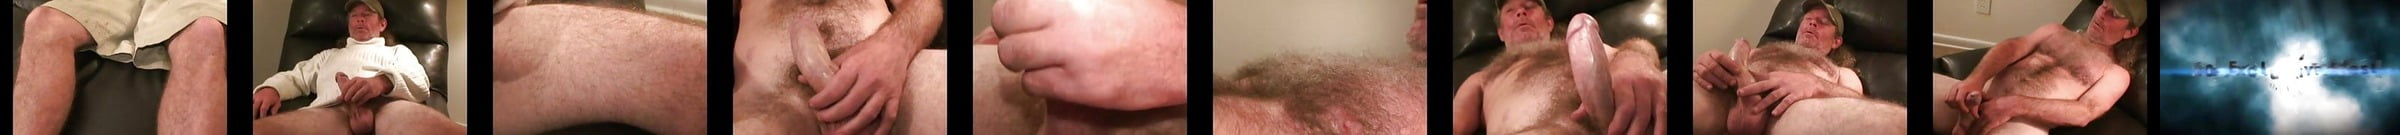 Featured Workin Men Xxx Gay Porn Videos Xhamster